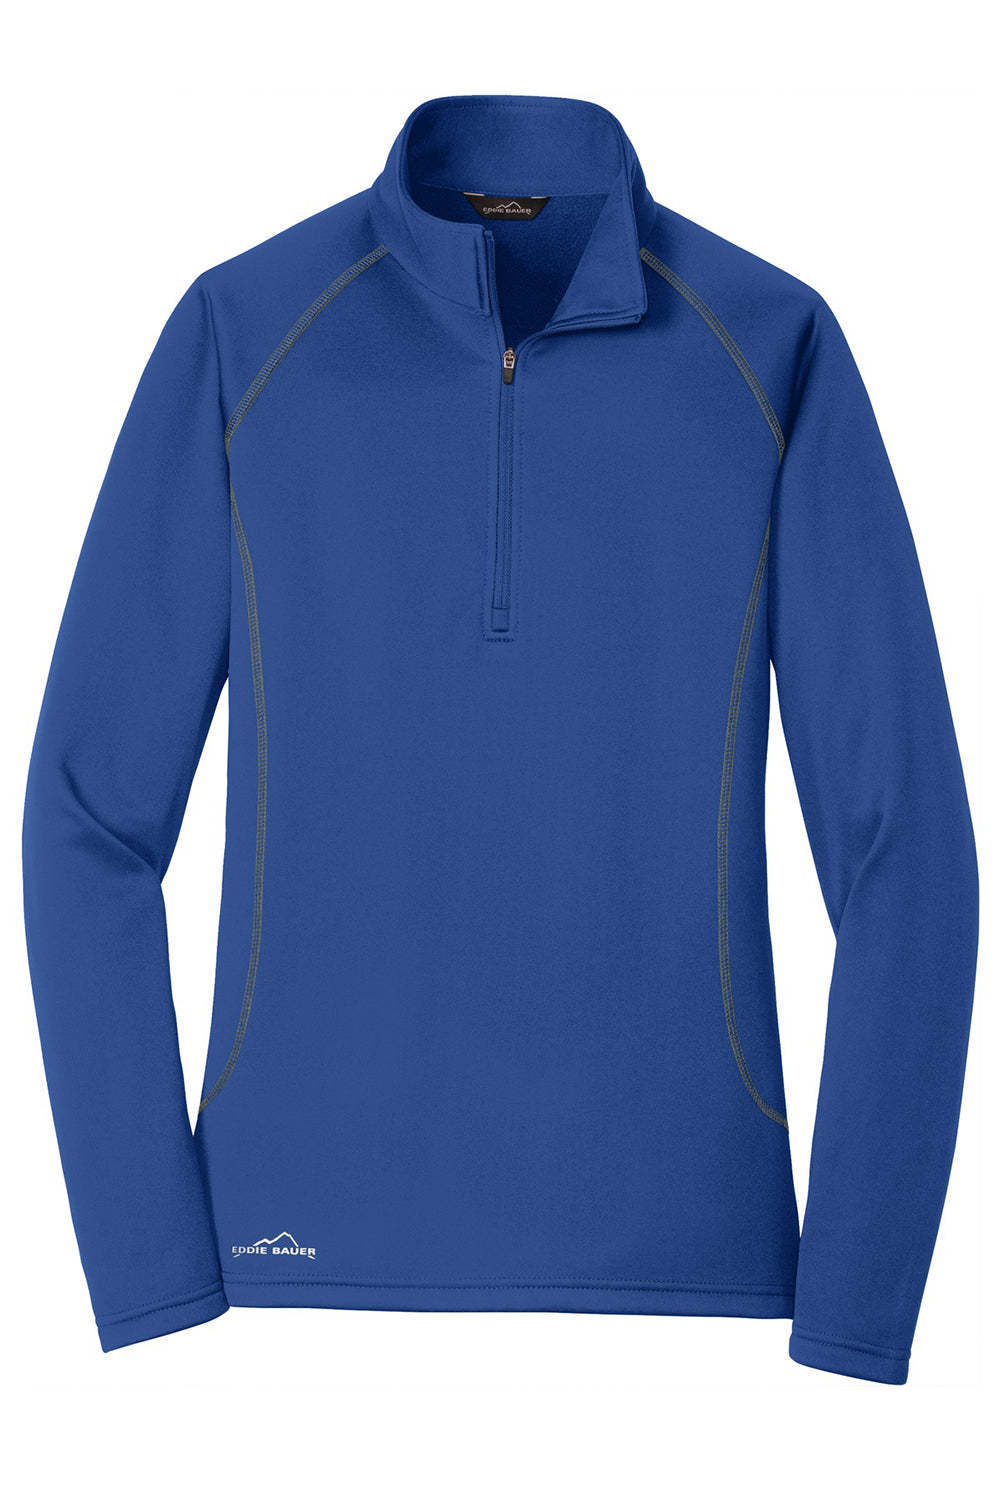 Eddie Bauer EB237 Womens Smooth Fleece 1/4 Zip Sweatshirt Cobalt Blue Flat Front